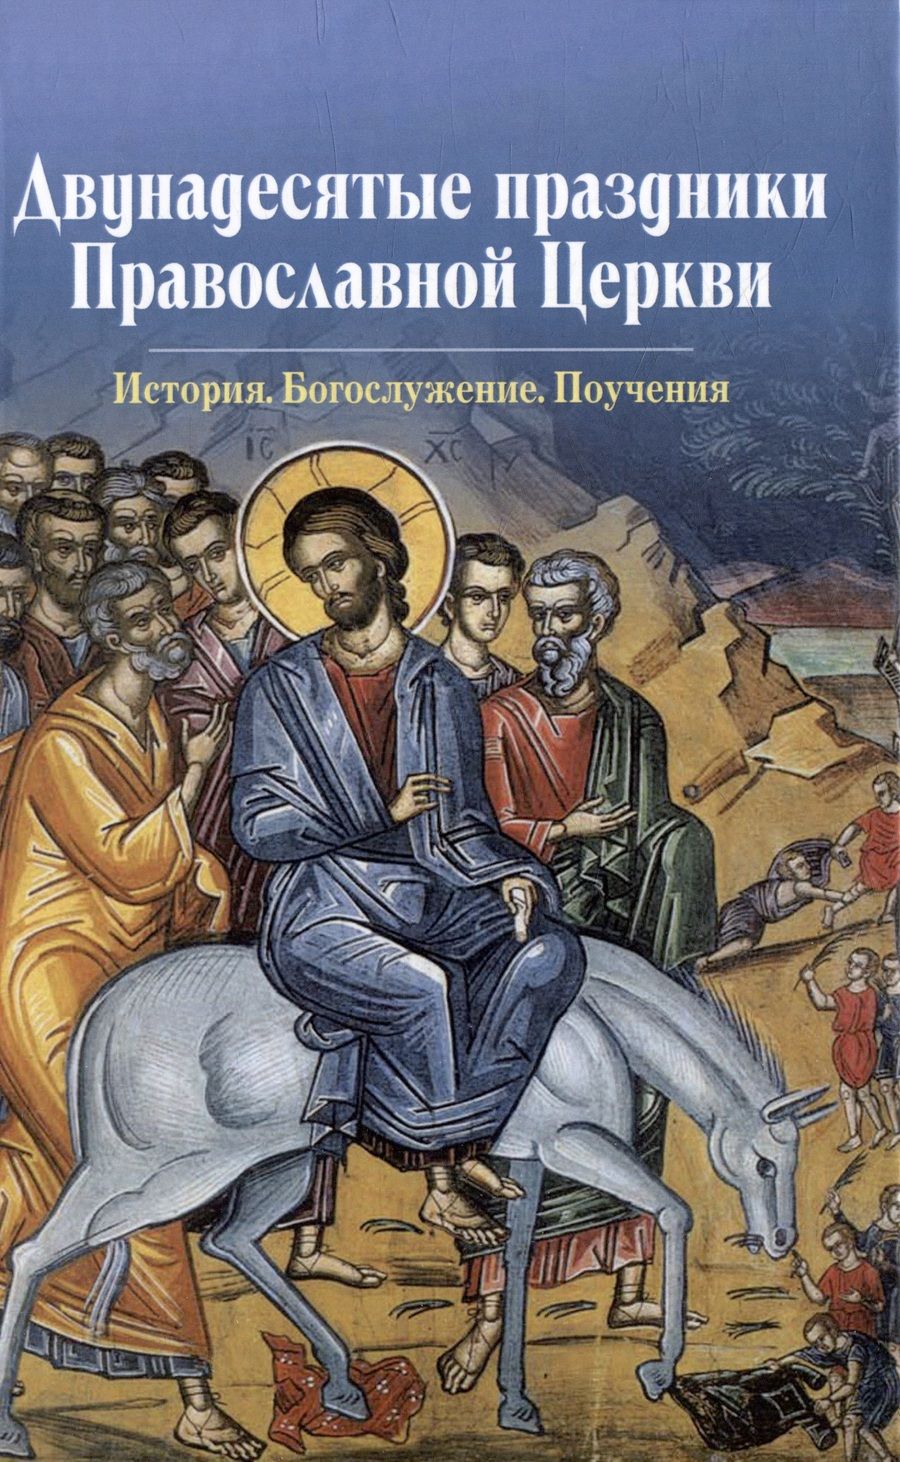 Обложка книги "Двунадесятые праздники Православной Церкви"